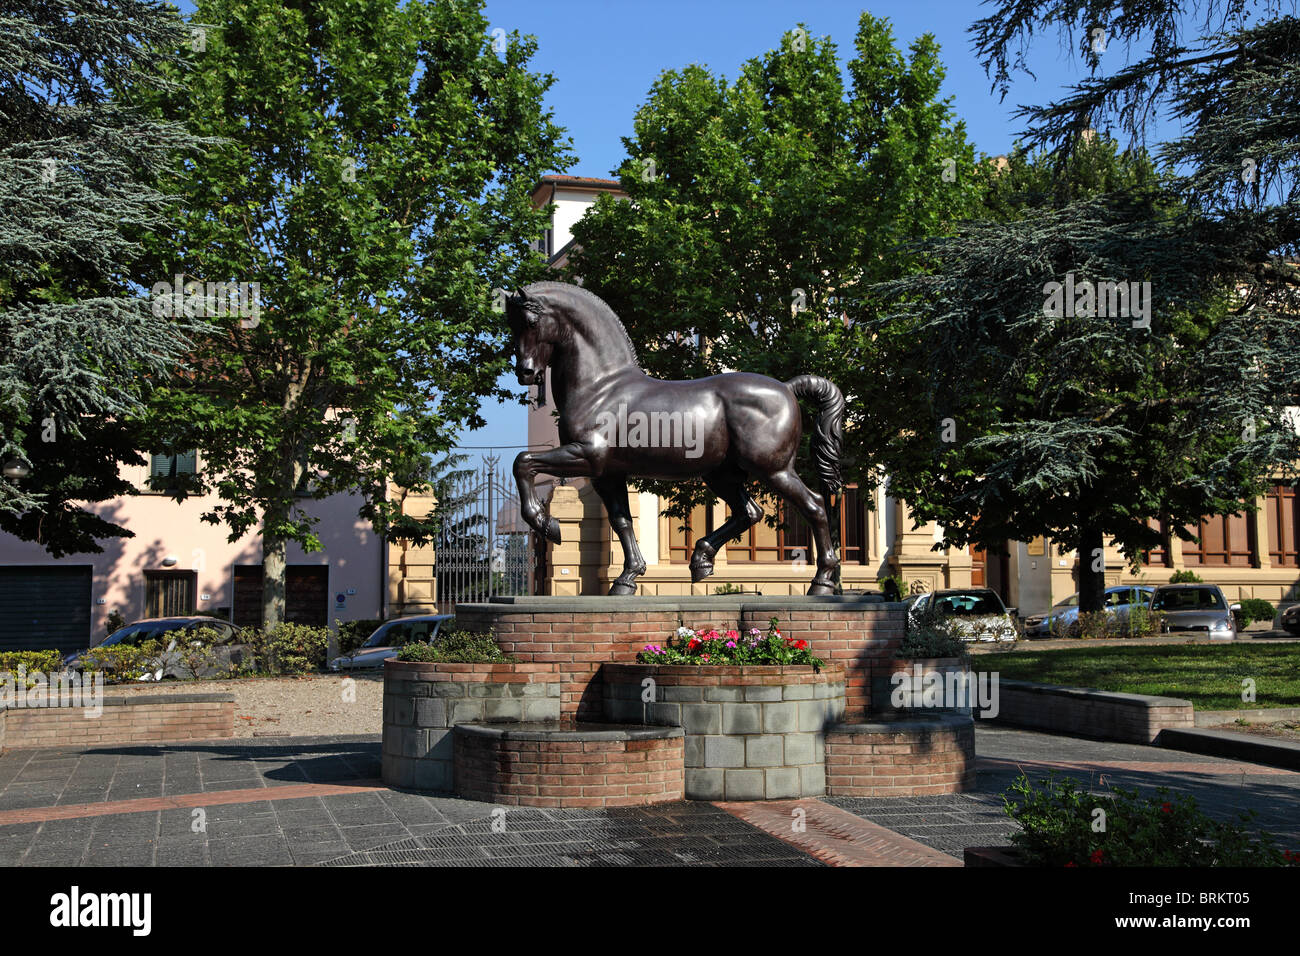 Cheval en bronze statue réplique conçue par Léonard de Vinci dans la place principale de la ville de Vinci, Toscane, Italie Banque D'Images